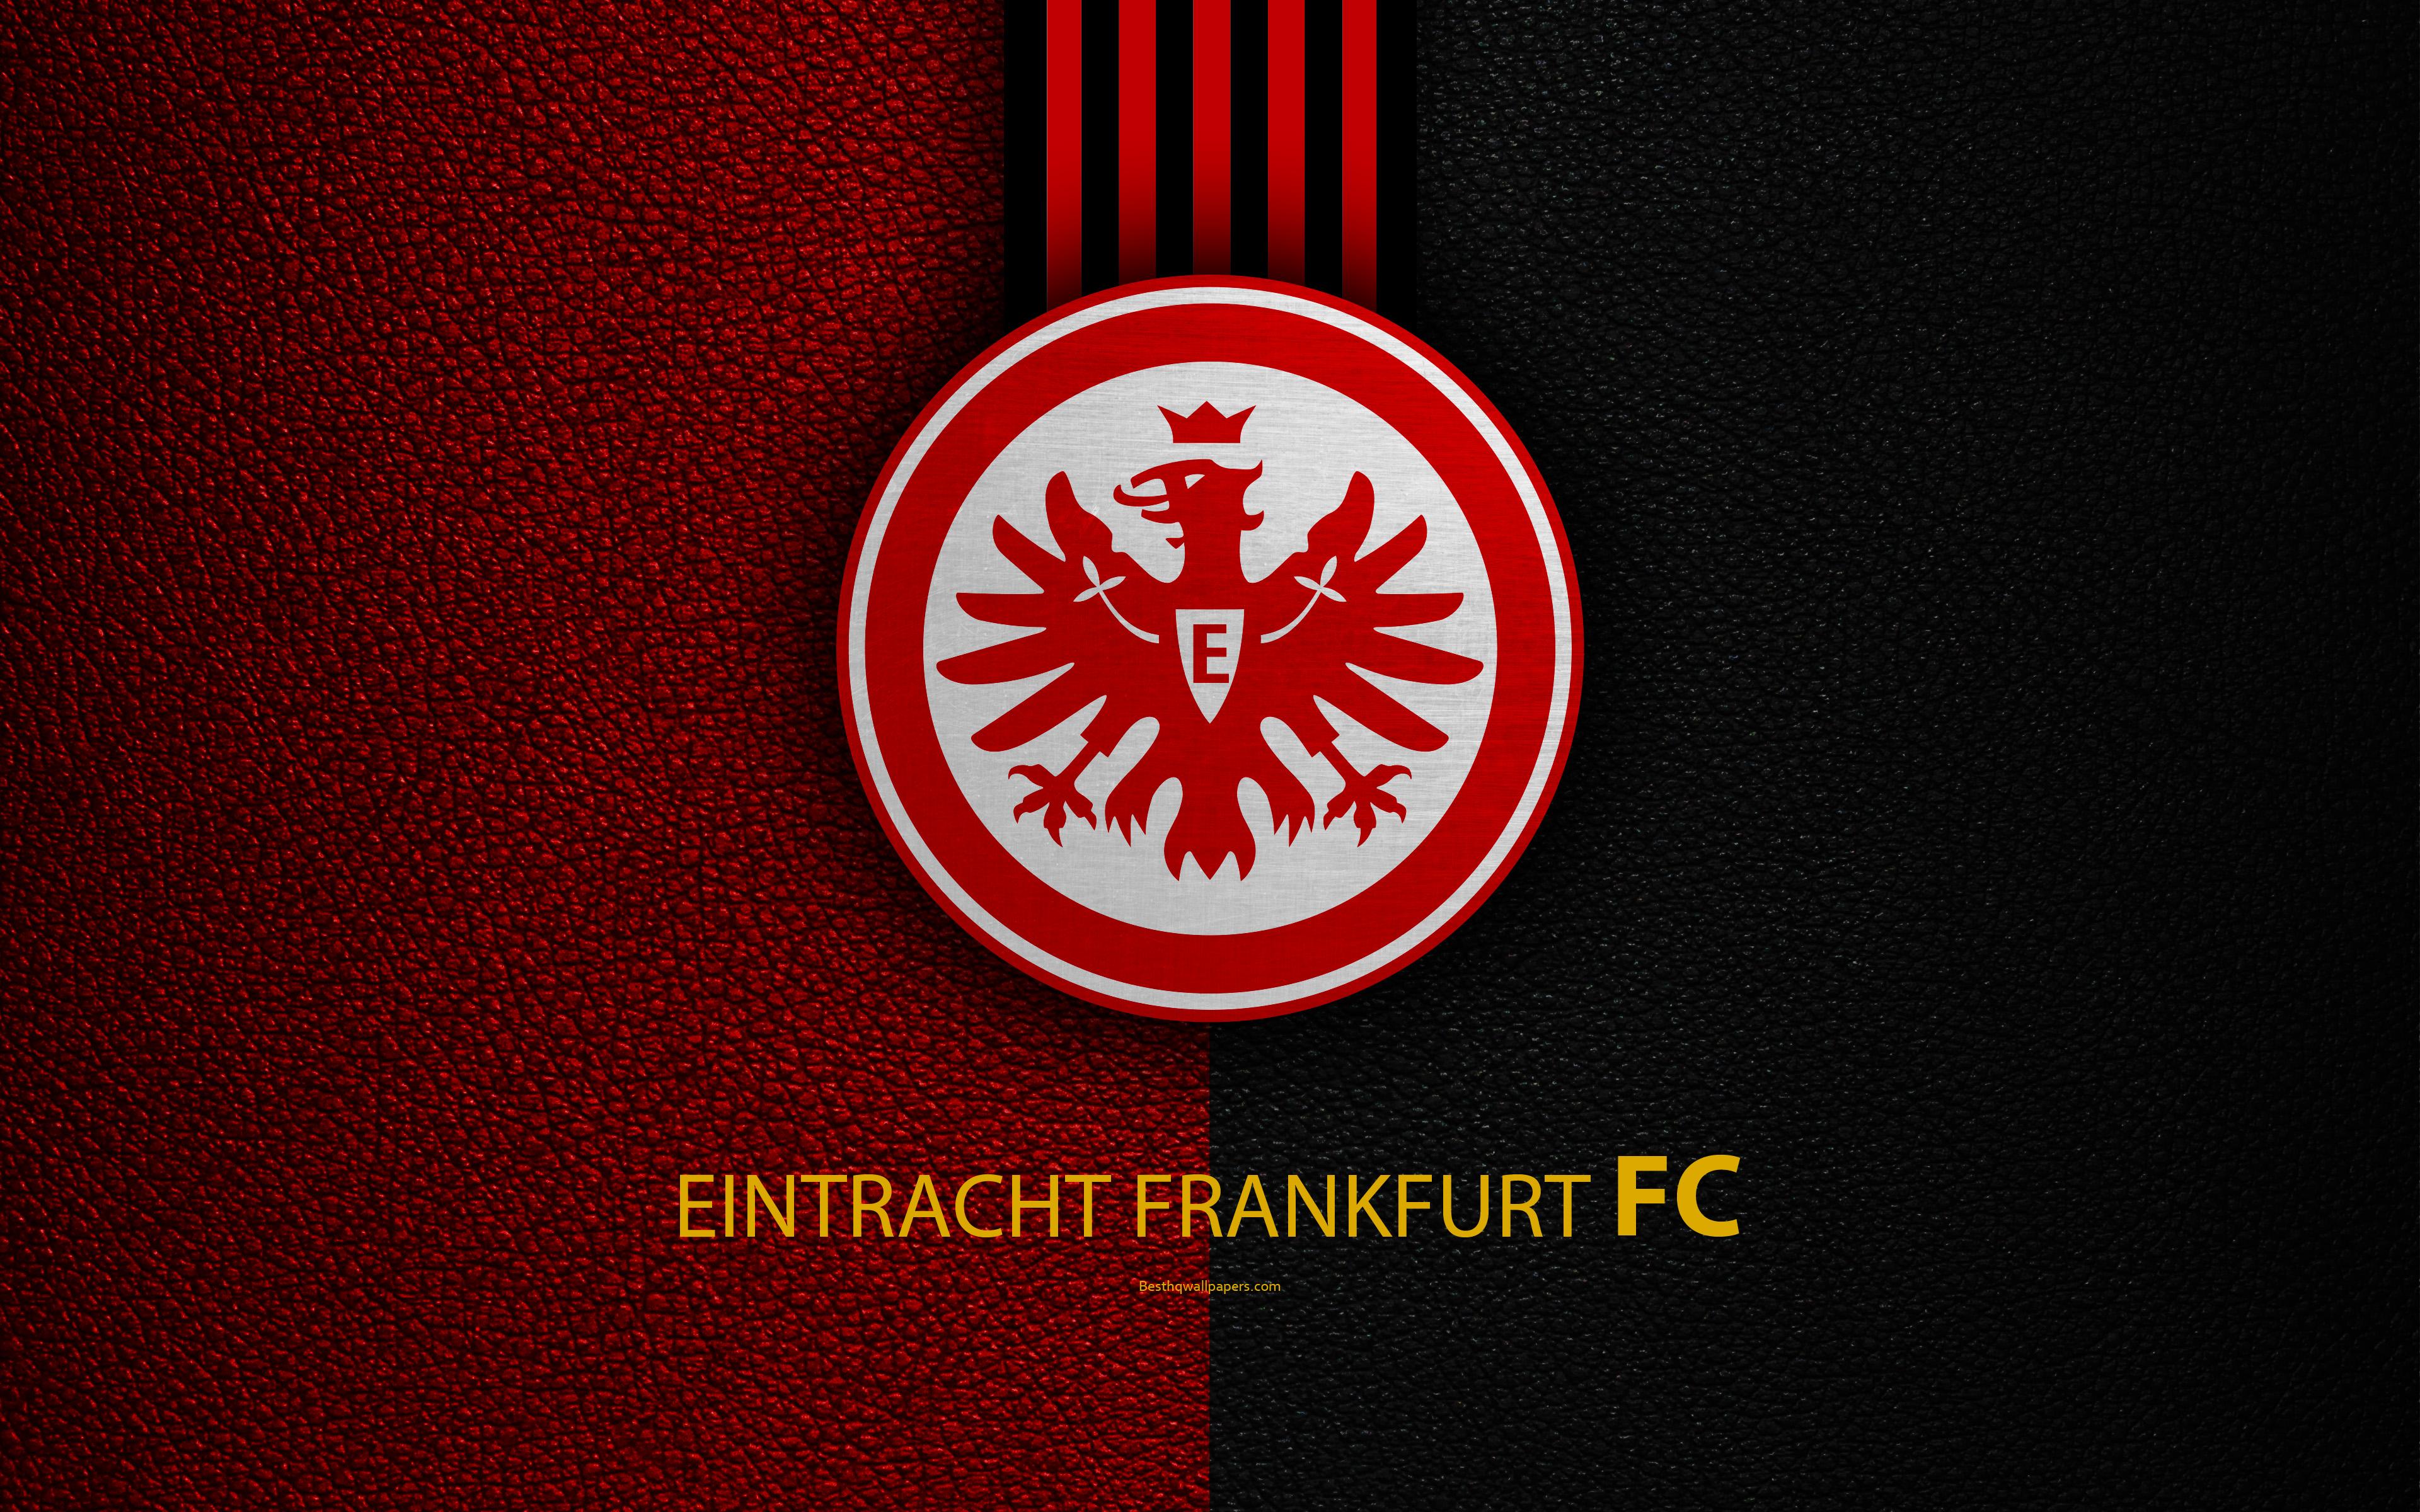 Download wallpaper Eintracht Frankfurt FC, 4k, German football club